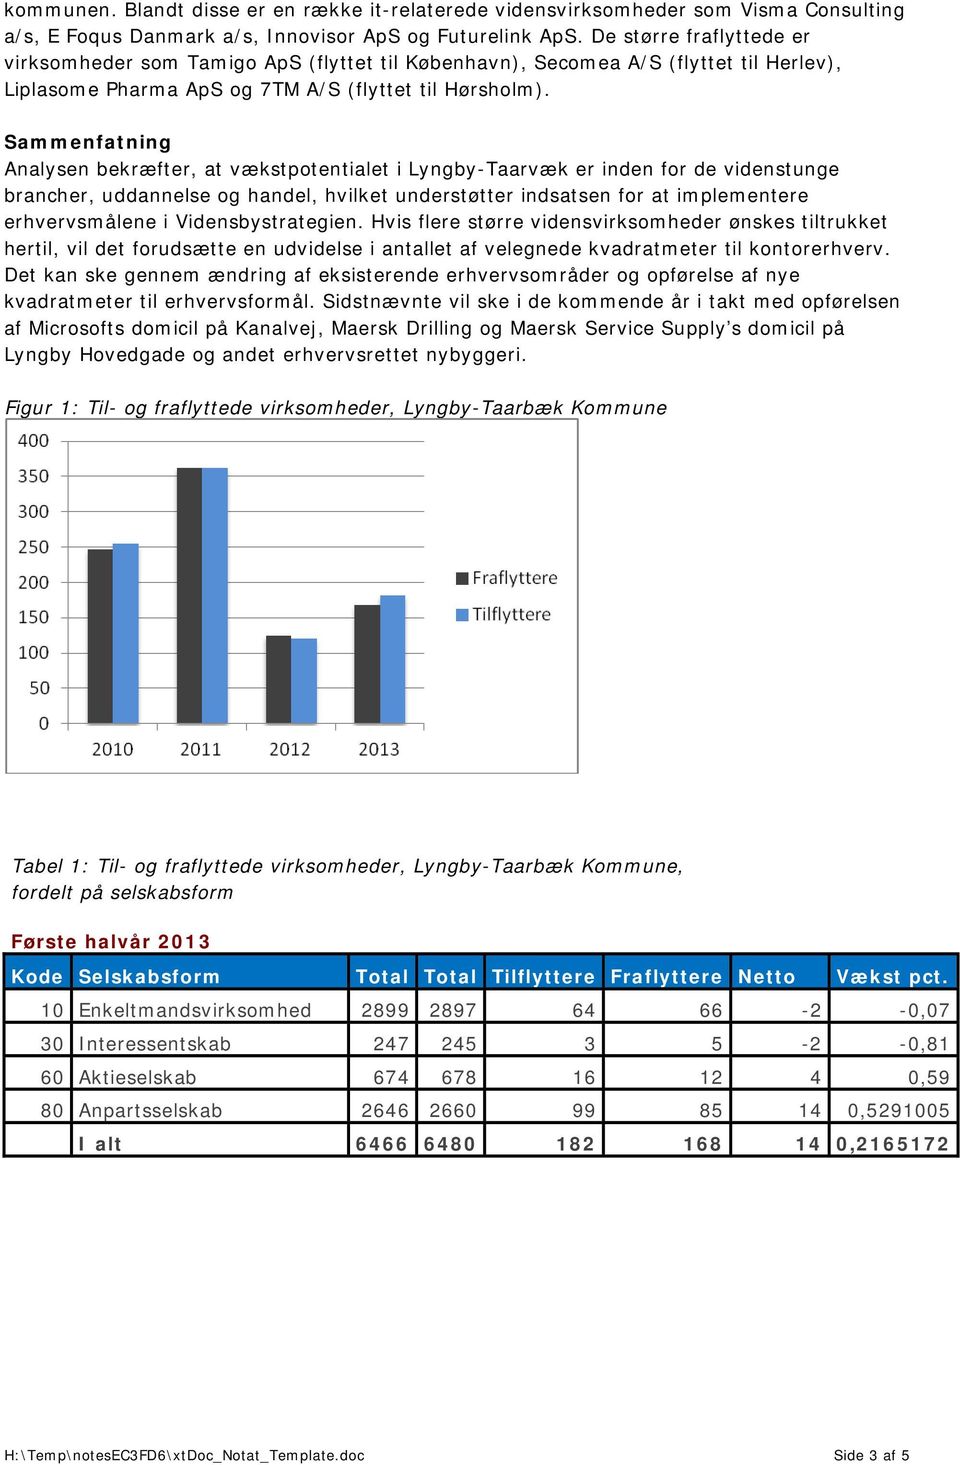 Sammenfatning Analysen bekræfter, at vækstpotentialet i Lyngby-Taarvæk er inden for de videnstunge brancher, uddannelse og handel, hvilket understøtter indsatsen for at implementere erhvervsmålene i